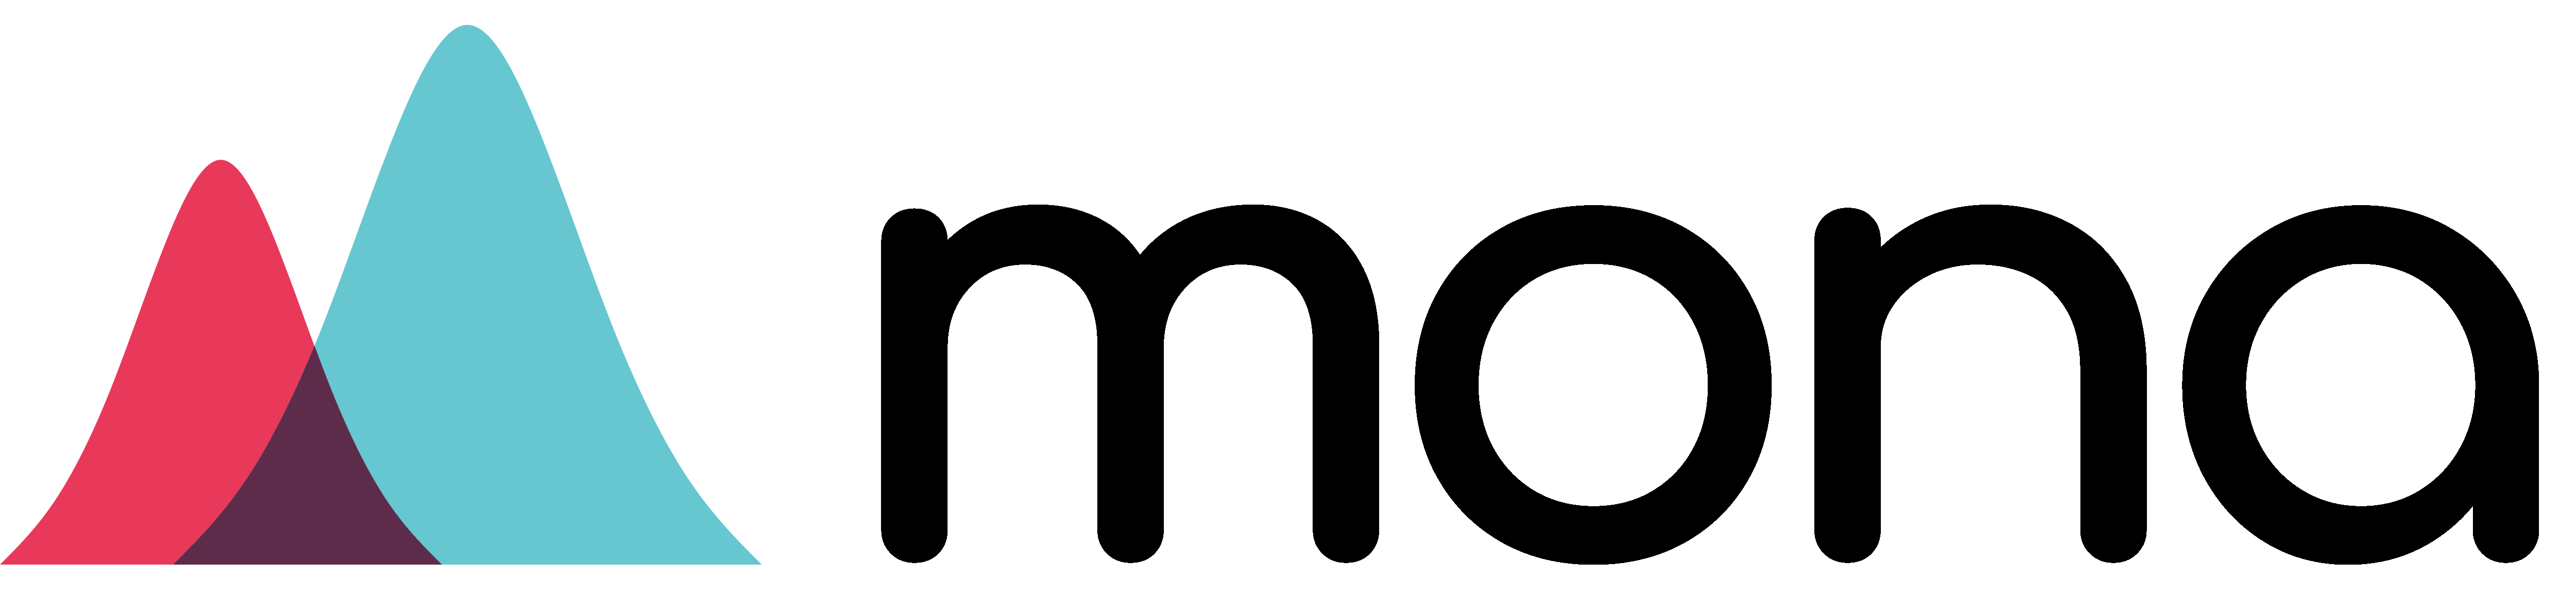 Mona company logo